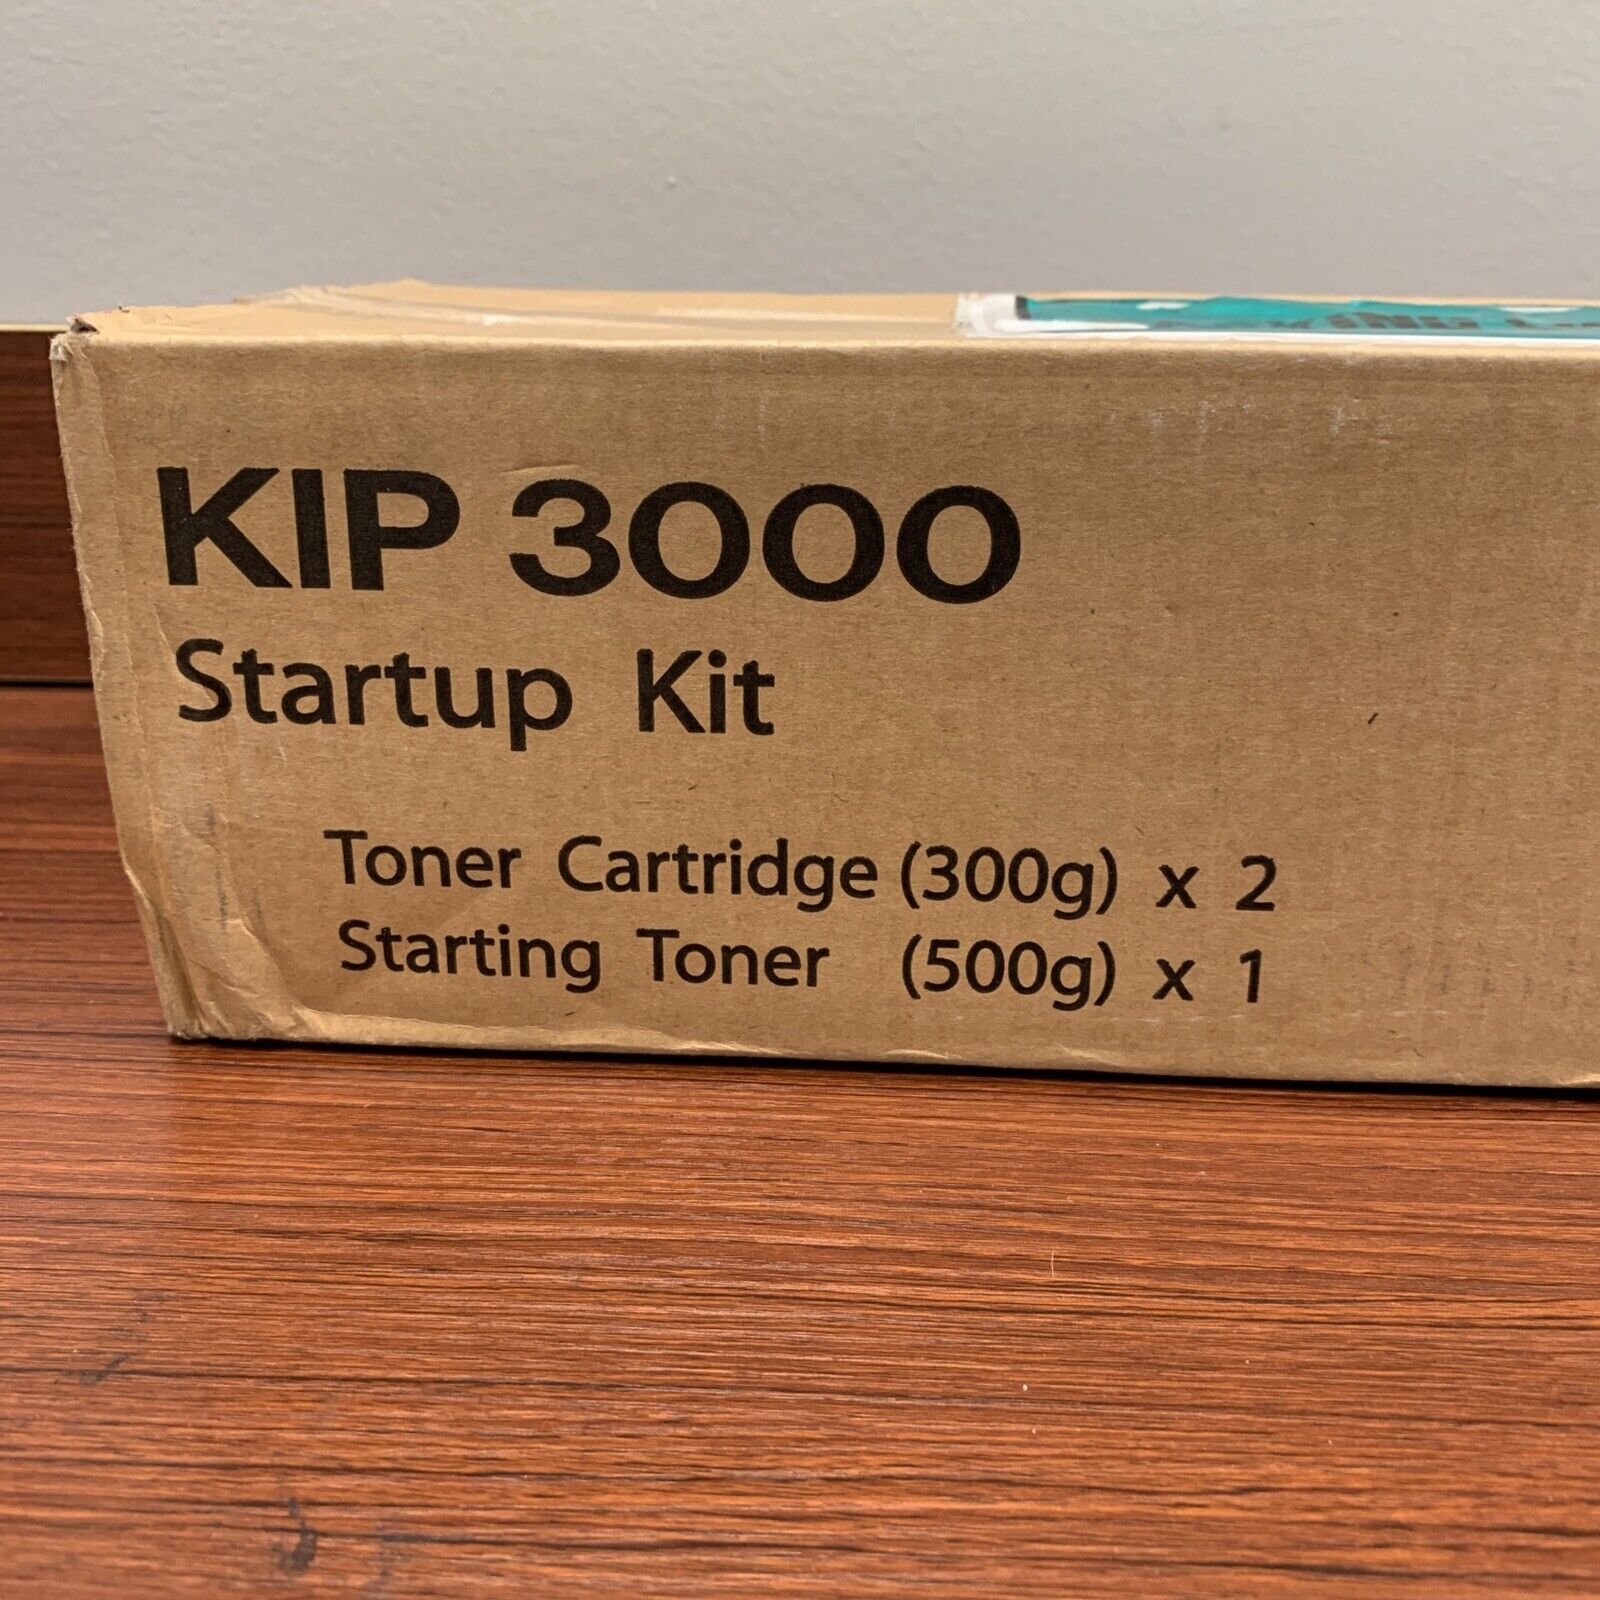 Z050980010-Genuine Kip 3000 Start Up Kit, Kip 3000